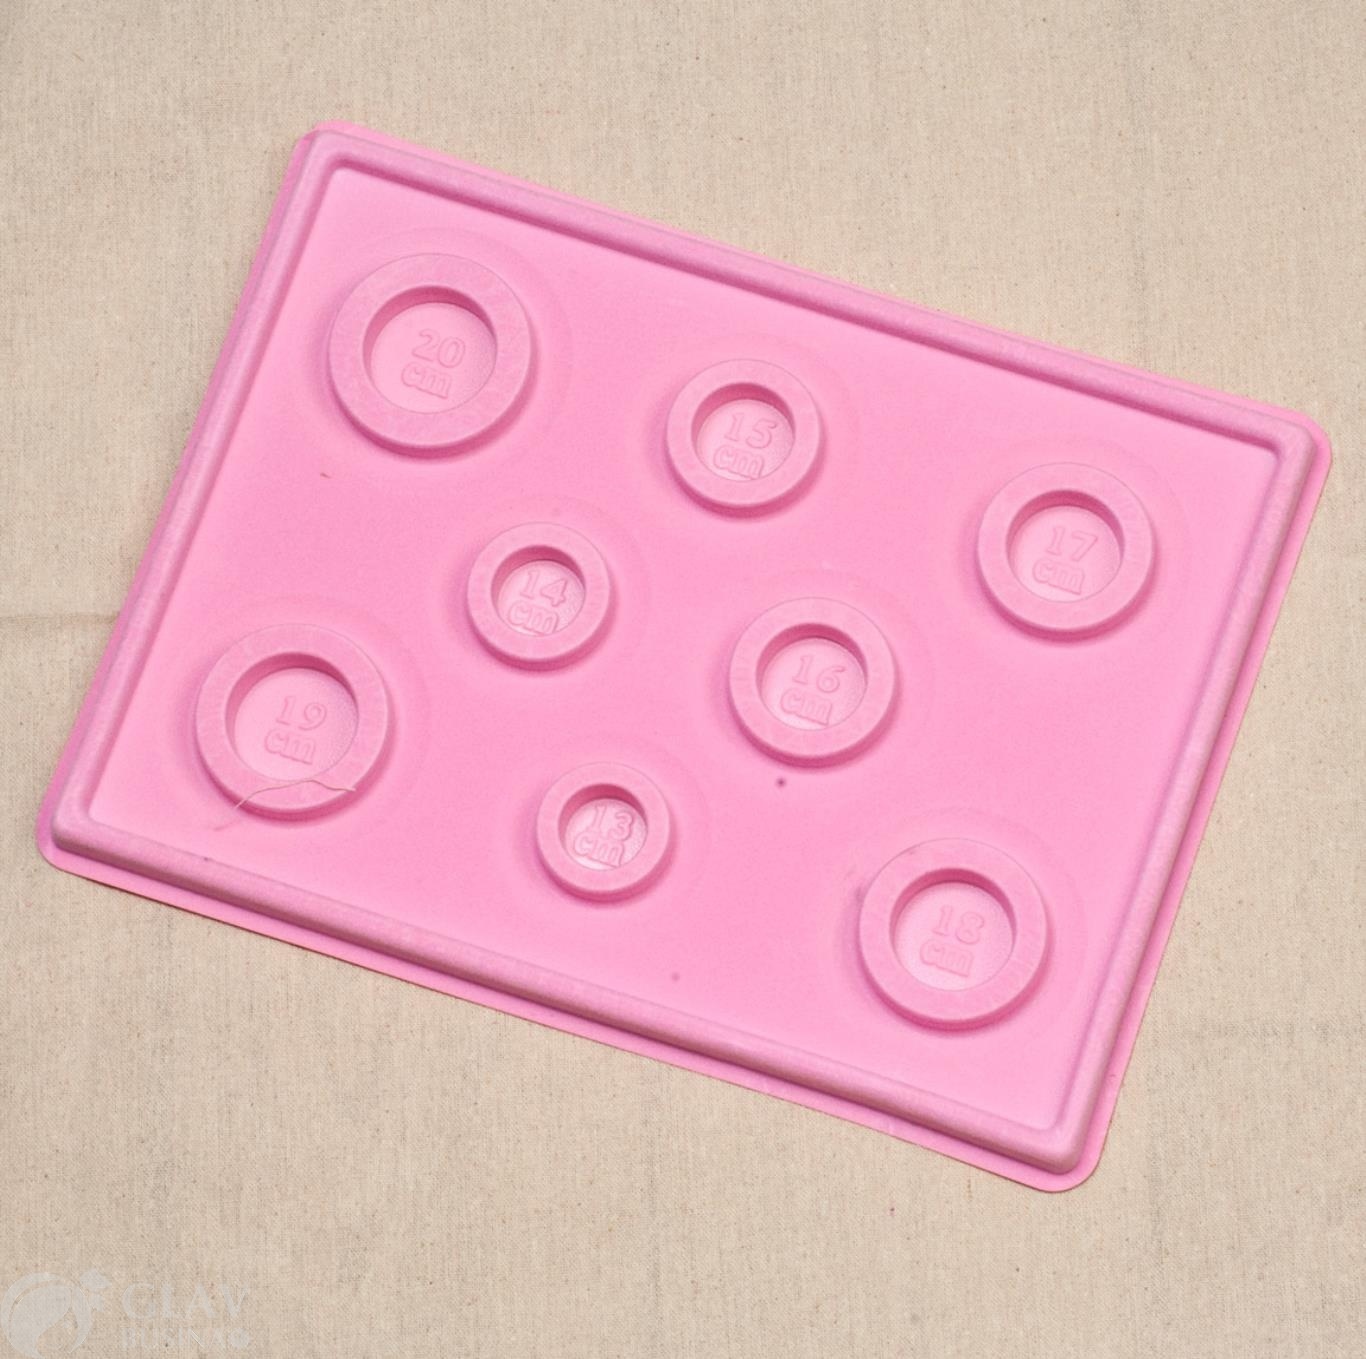 Планшет для сборки браслетов, 13-20 см, основа пластик, поверхность ворсистая, цвет розовый.  р-р 35х26 см